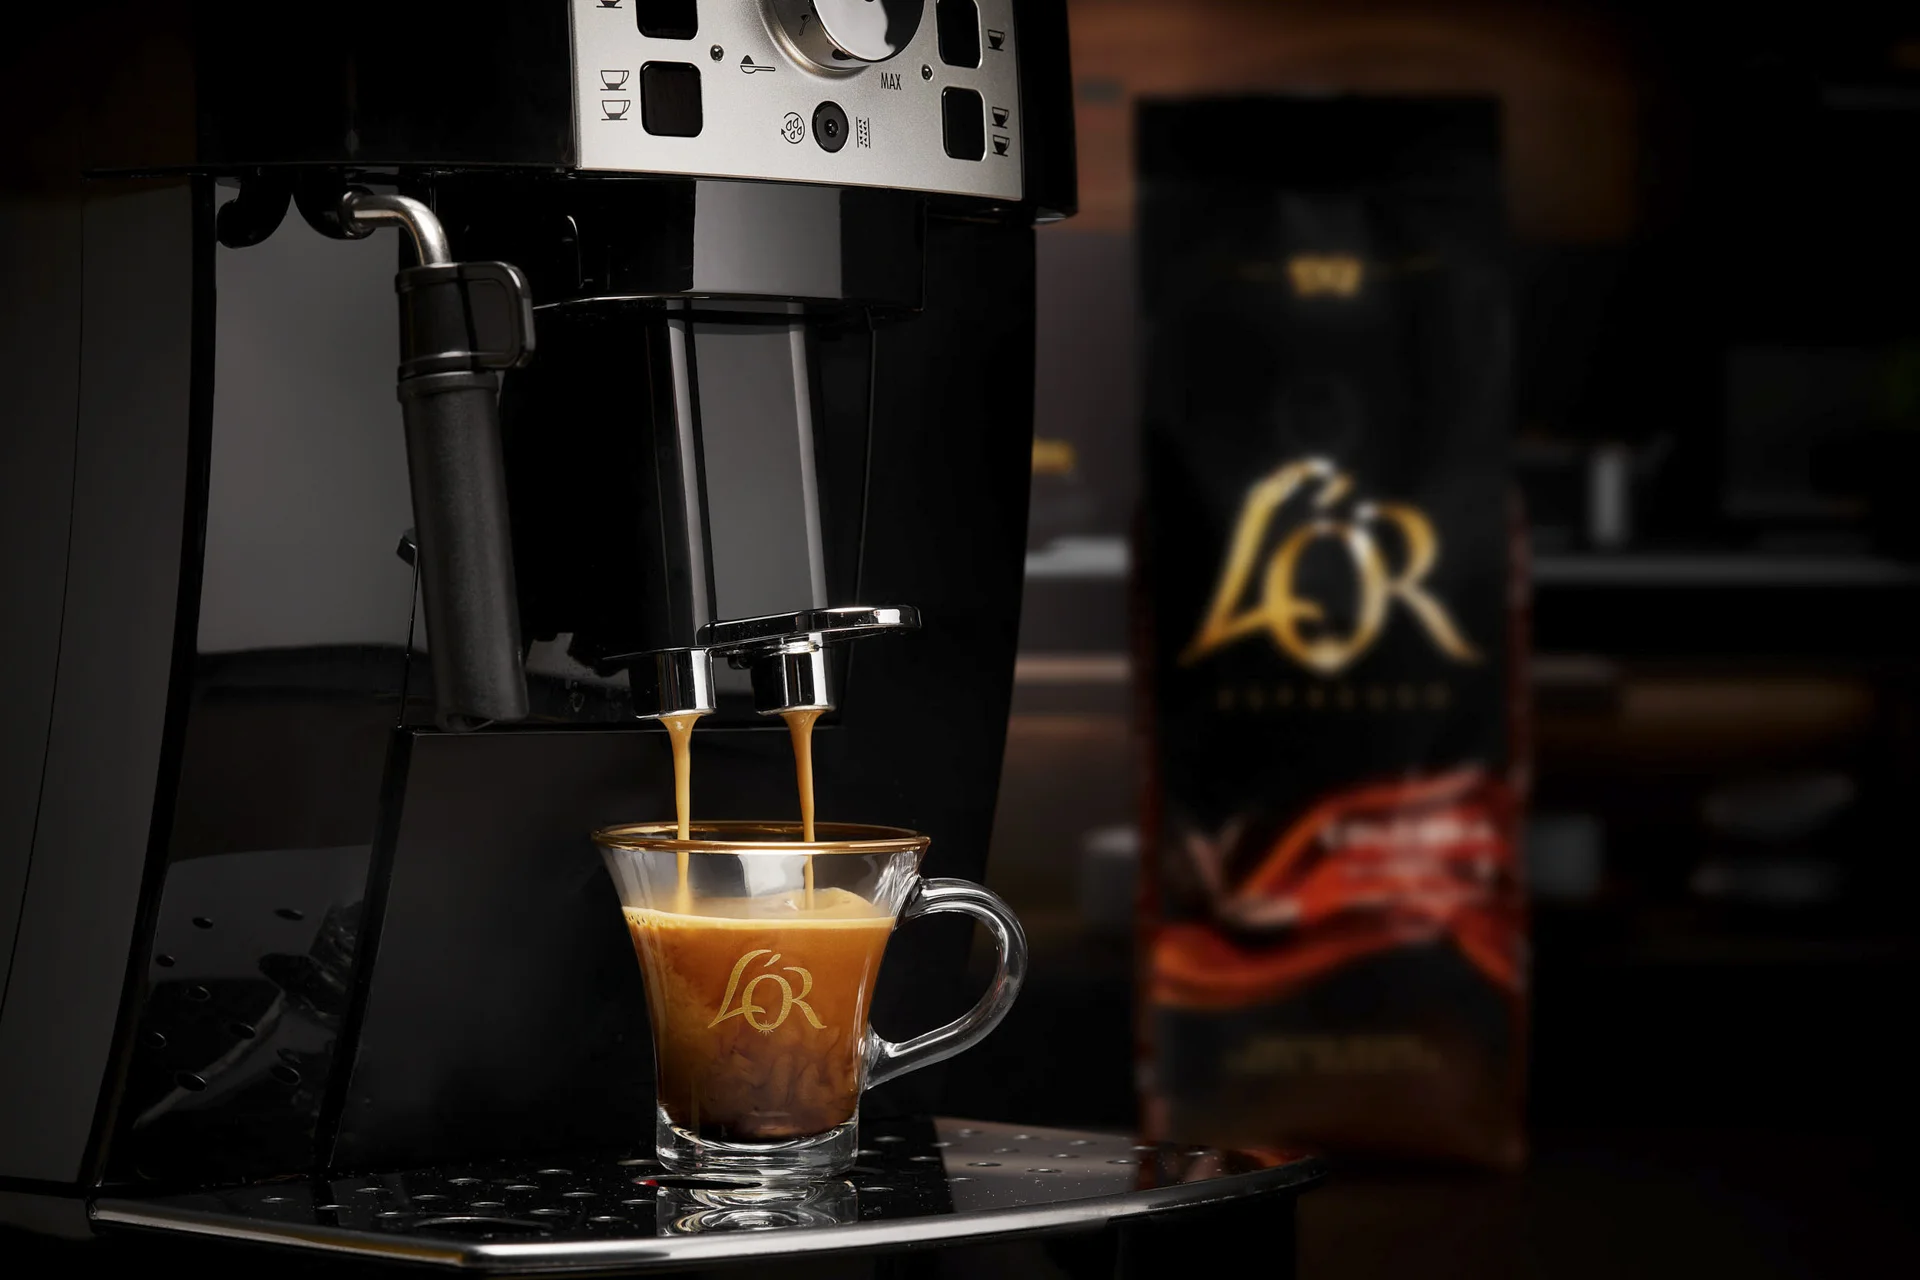 Fotografía bodegón publicitario para la gama de café en grano para cafeteras domesticas L'Or en localización.